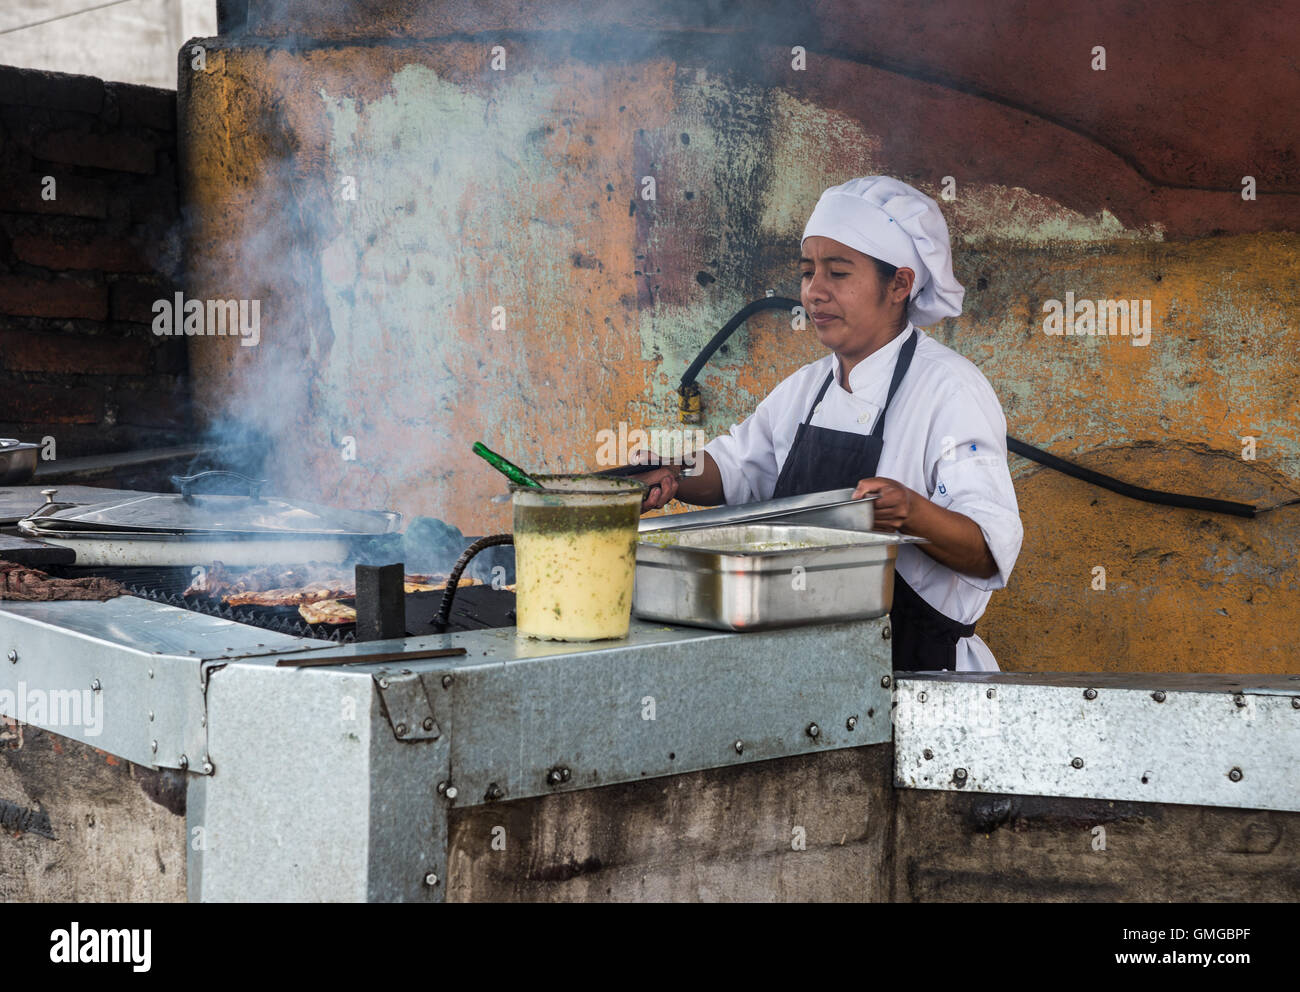 Une femme cuisinière grill viande dans une cuisine en plein air. Quito, Equateur. Banque D'Images